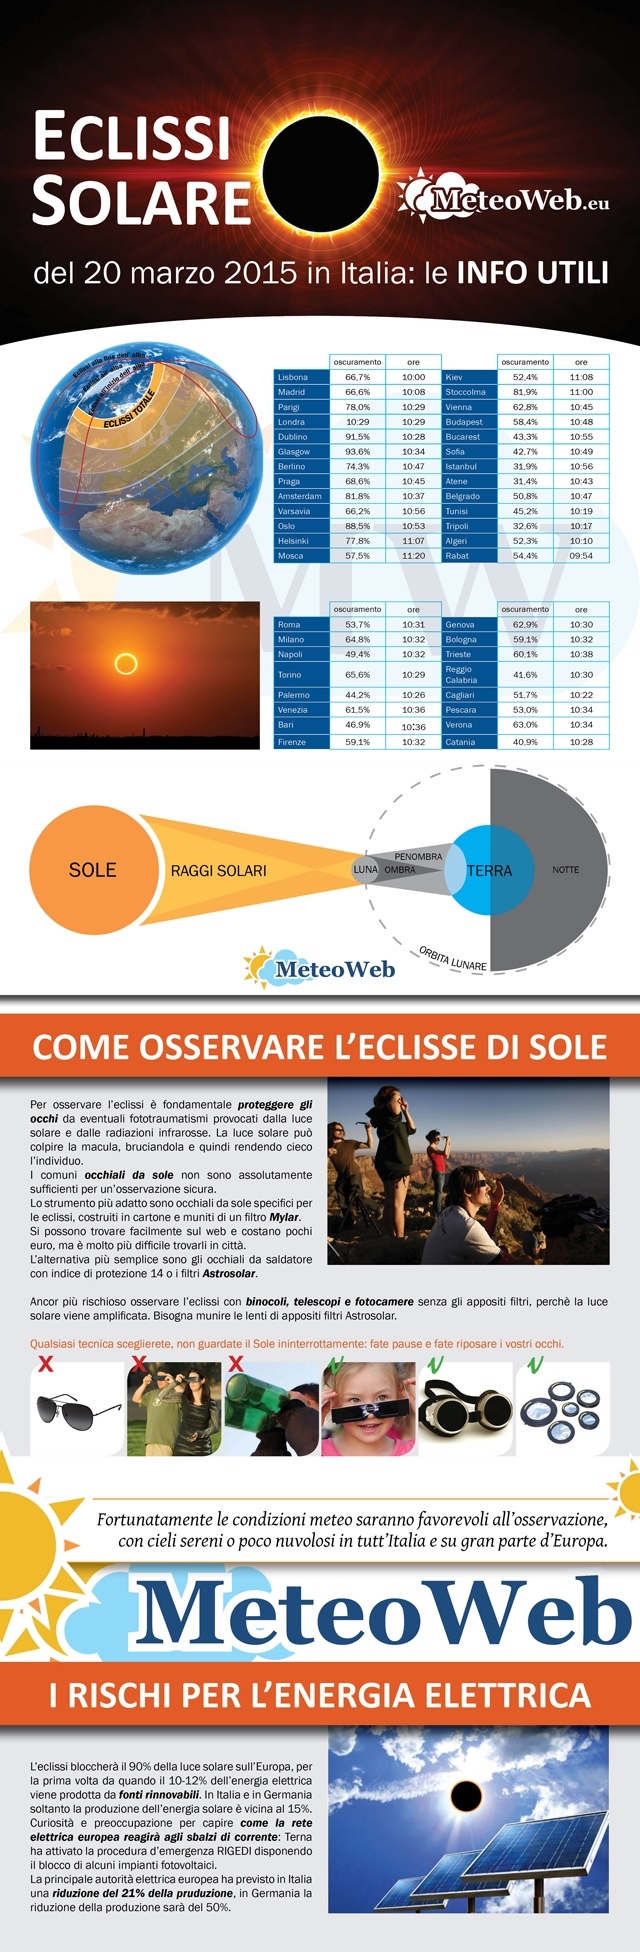 eclissi solare infografica meteoweb